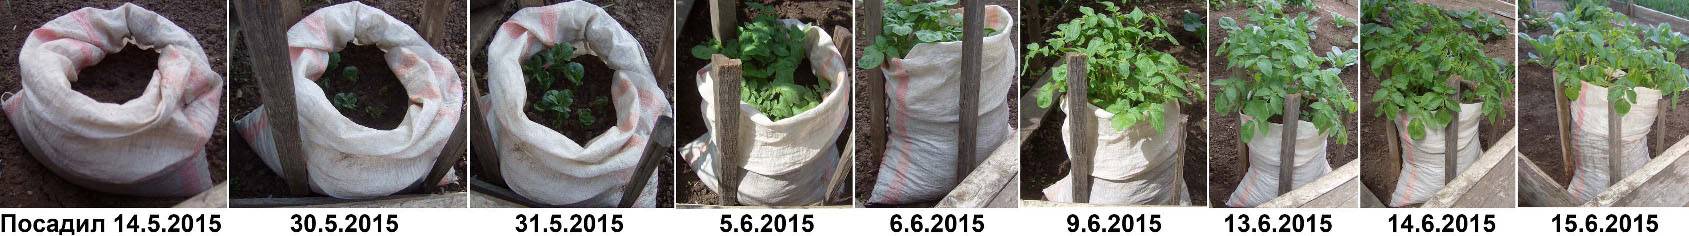 Посадка и выращивание картофеля в мешках: технология посадки, особенности, пошаговая инструкция